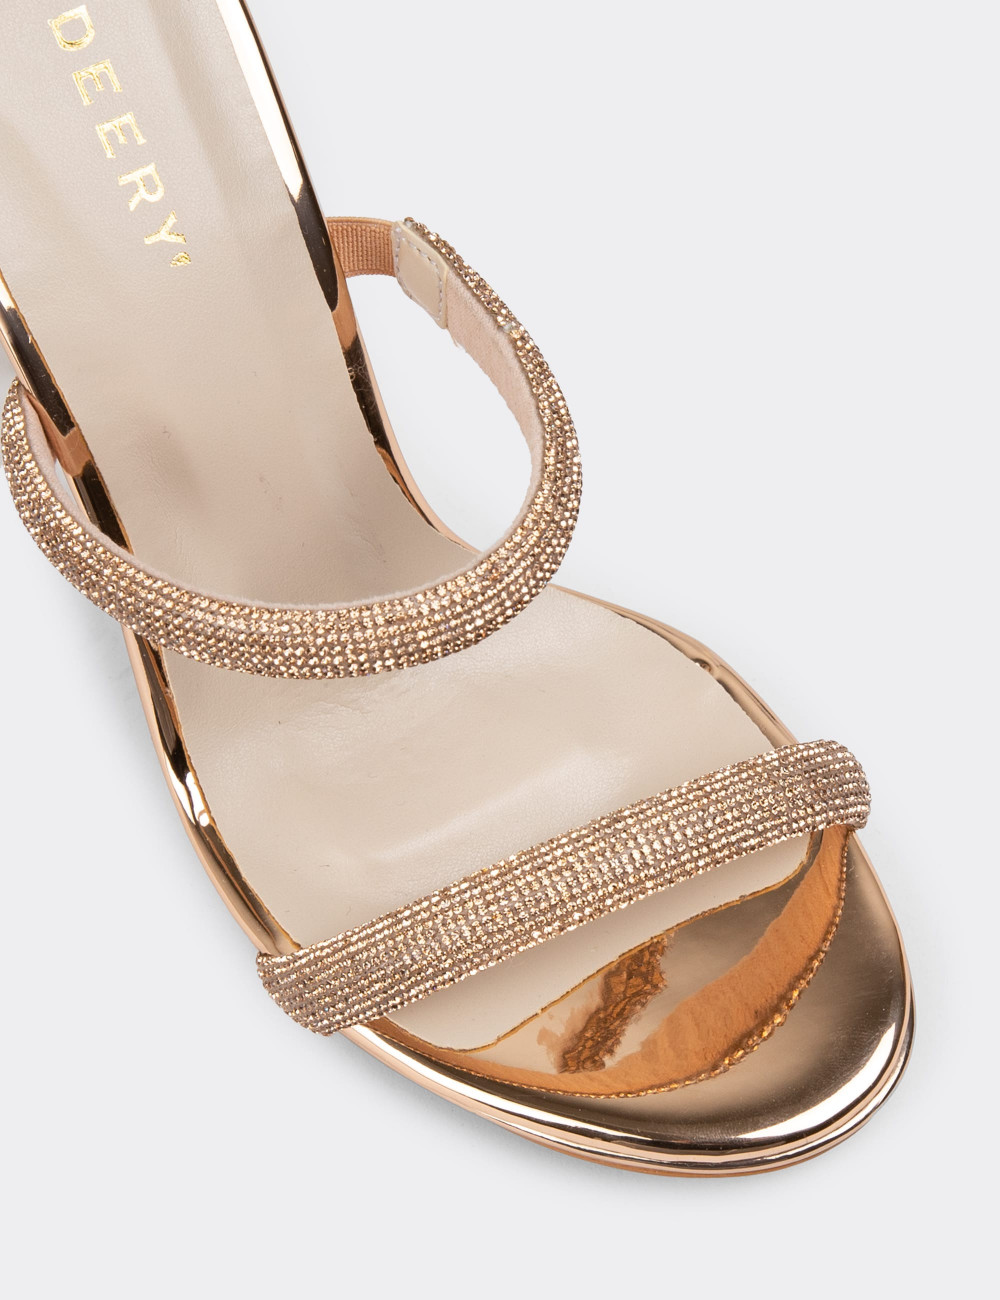 Altın Rengi Topuklu Kadın Taşlı Abiye Ayakkabı - H1748ZALTM01